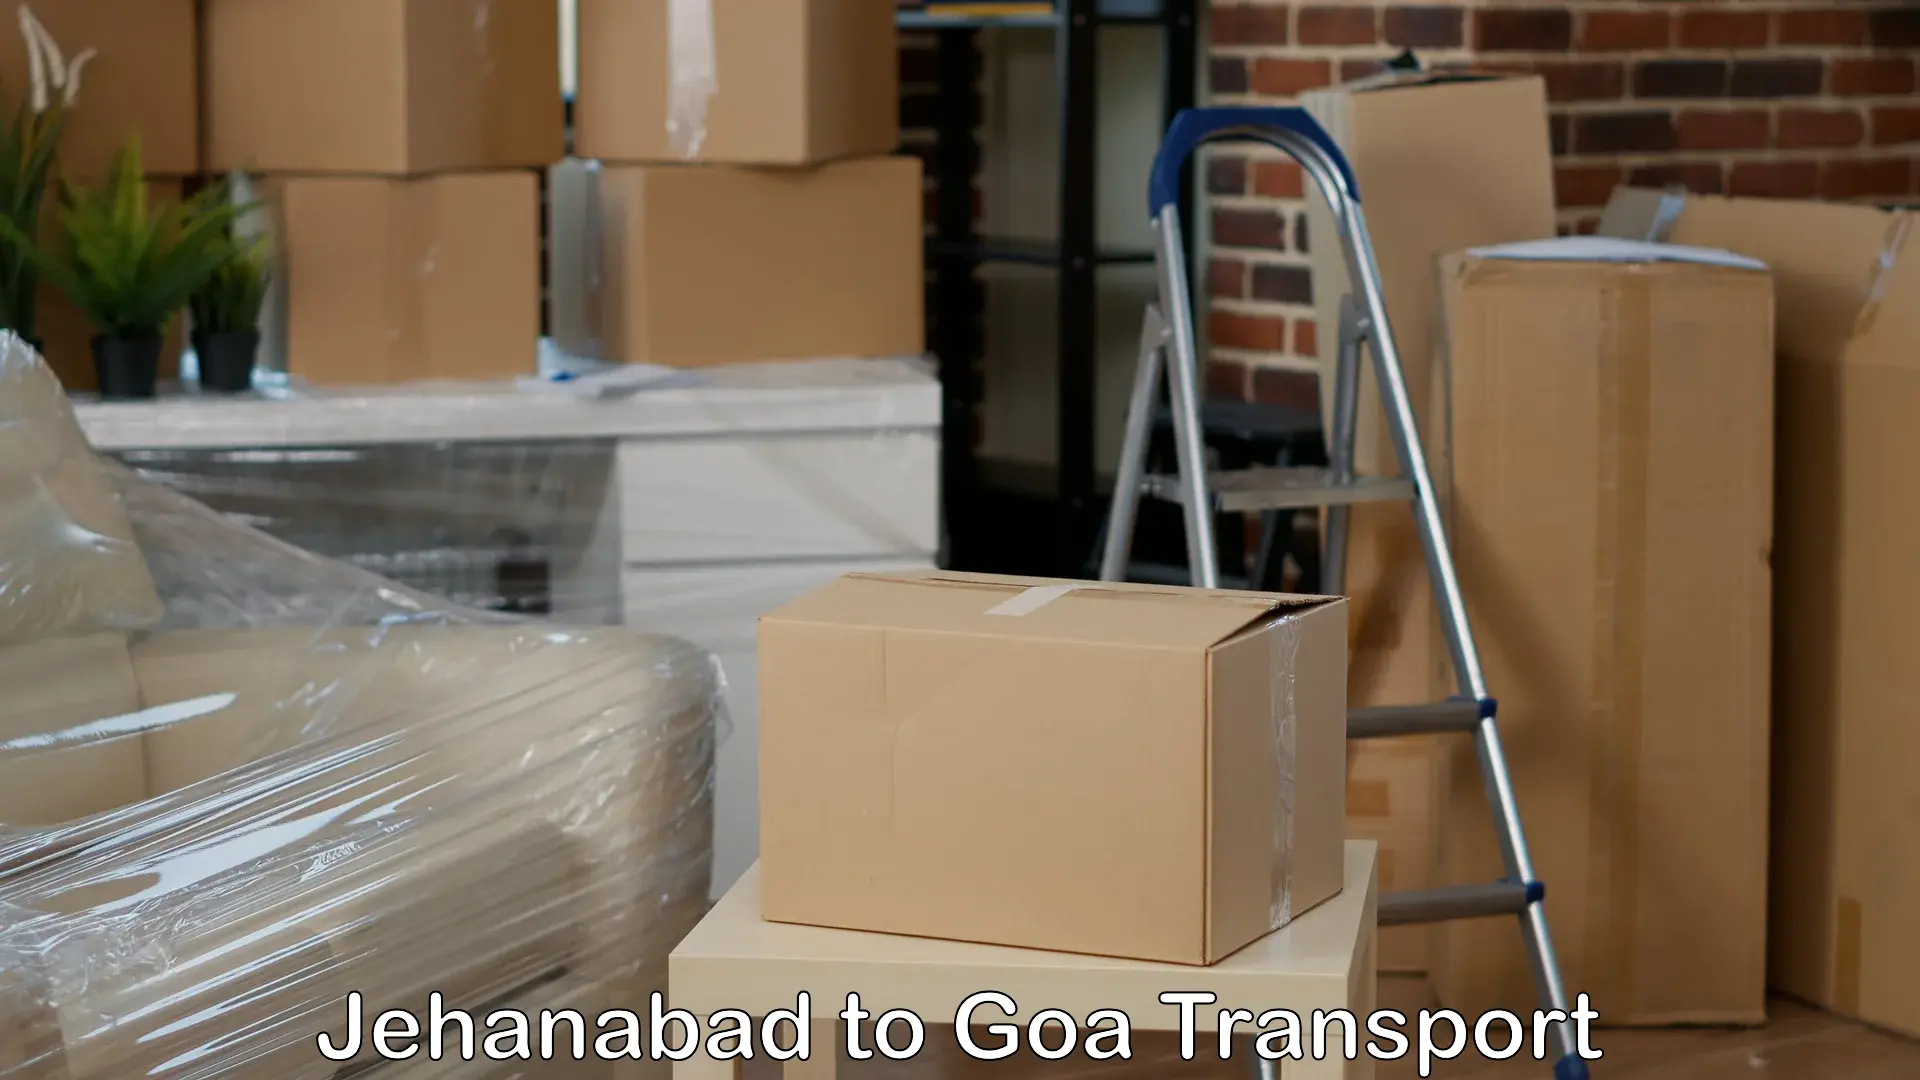 Door to door transport services in Jehanabad to Goa